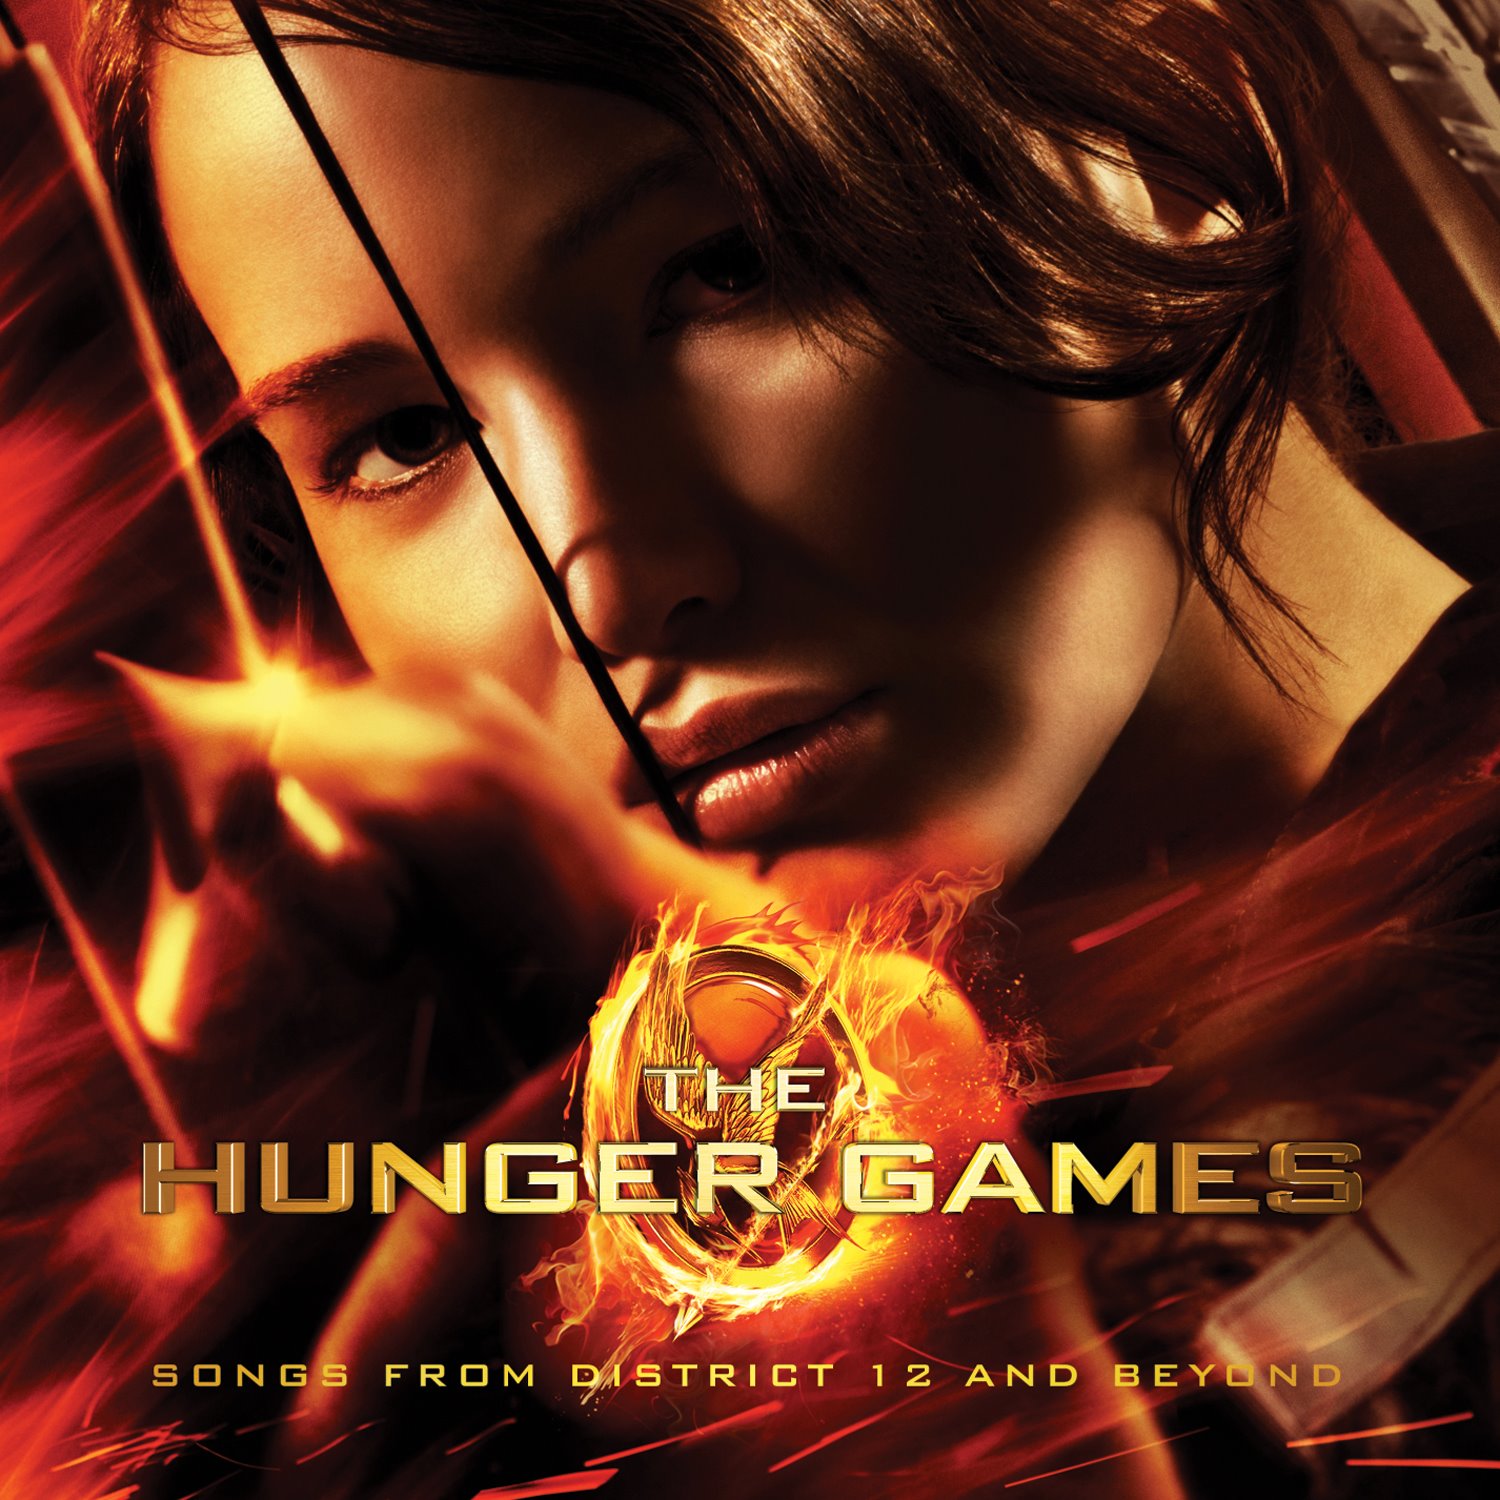 http://2.bp.blogspot.com/-nmgfd1Ppa94/T2pfQnHIIRI/AAAAAAAAAzc/XHbyaXhyICw/s1600/The+Hunger+Games+Soundtrack.jpg